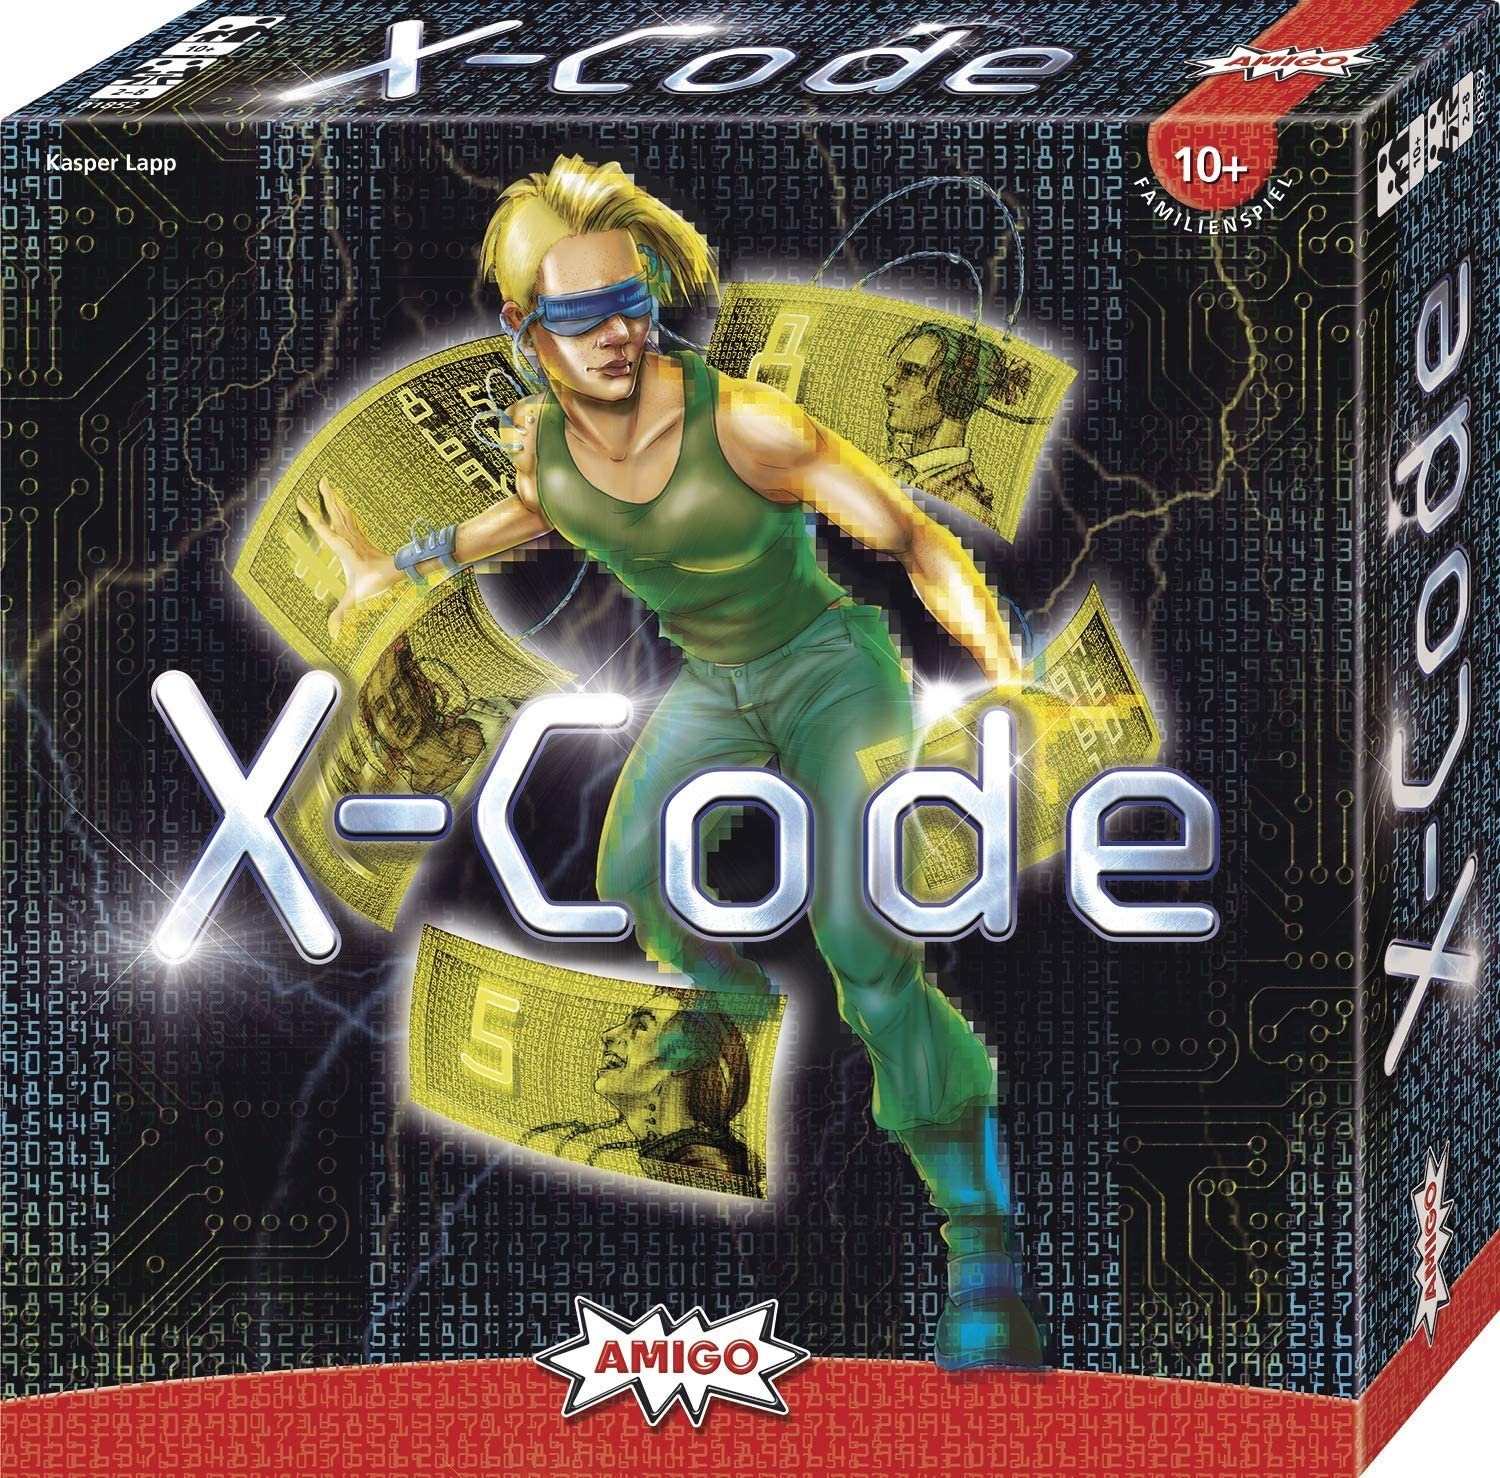 X-Code Brettspiel AMIGO Brettspiel - Spiel,